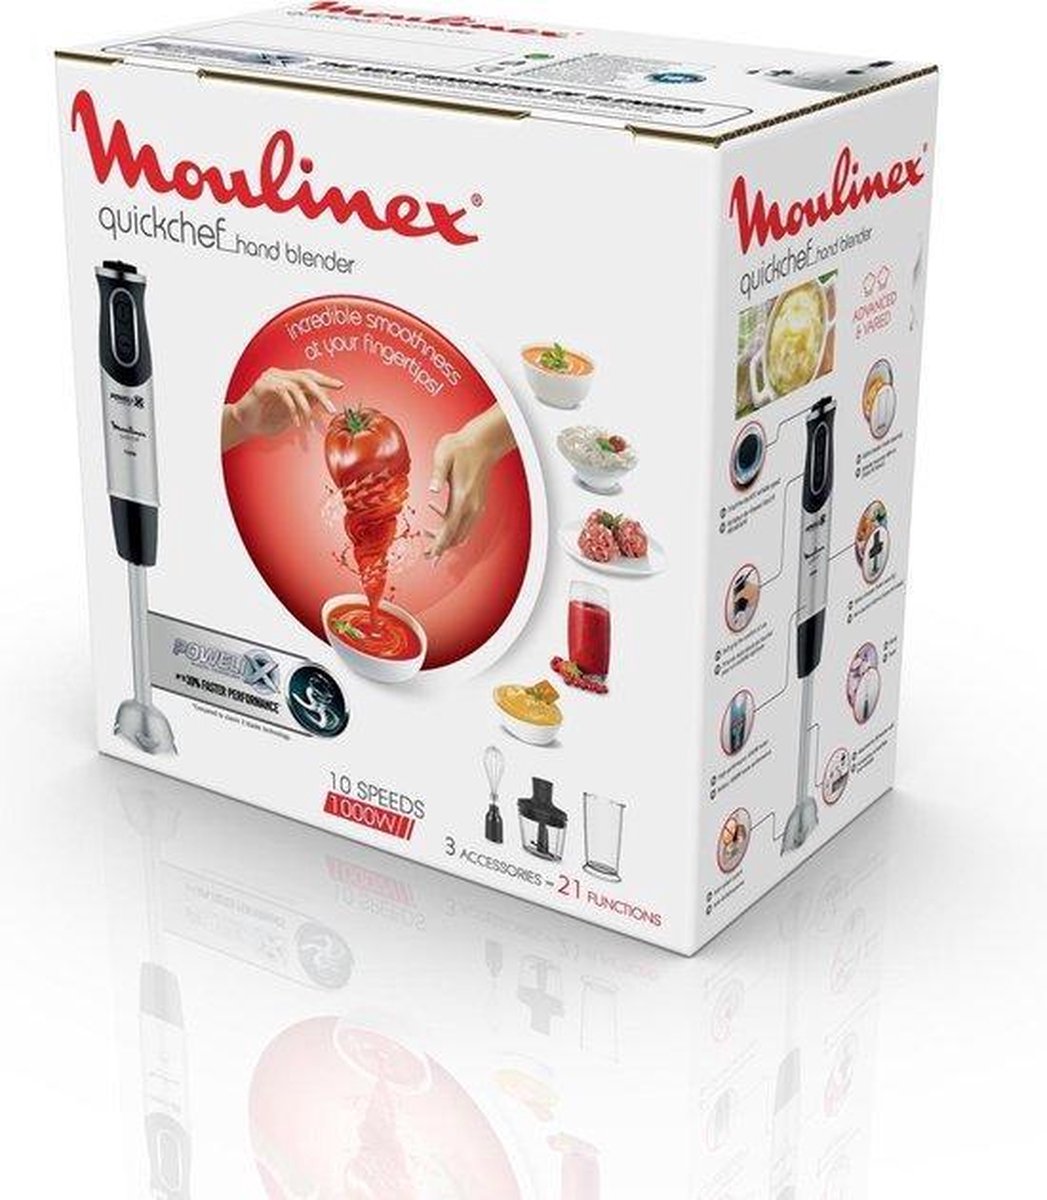 Moulinex Quickchef 3en1 DD655810 - Mixeur manuel | bol.com